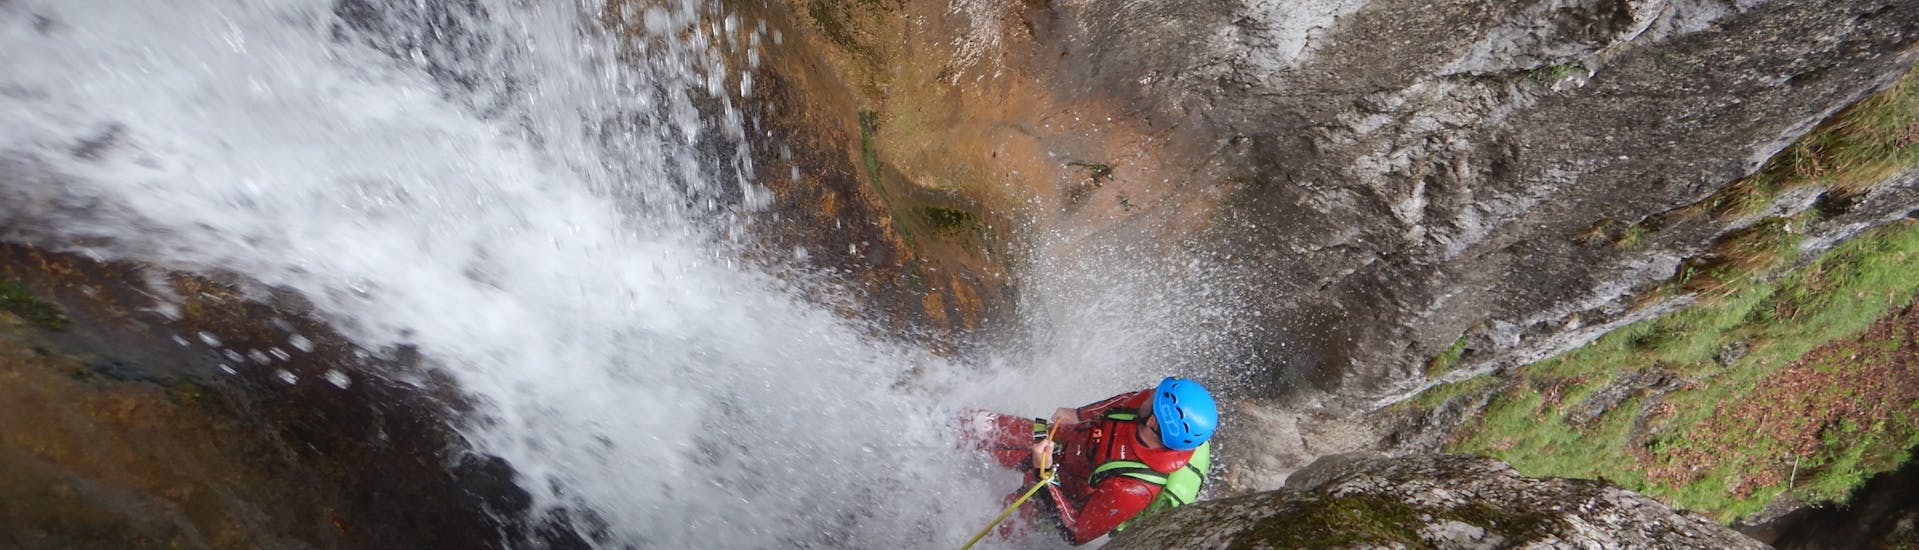 Ein Mann seilt sich durch einen Wasserfall ab während des Canyoning in der Taxaklamm für Fortgeschrittene - Waterfall Lovers mit CIA Canyoning in Austria Kössen.